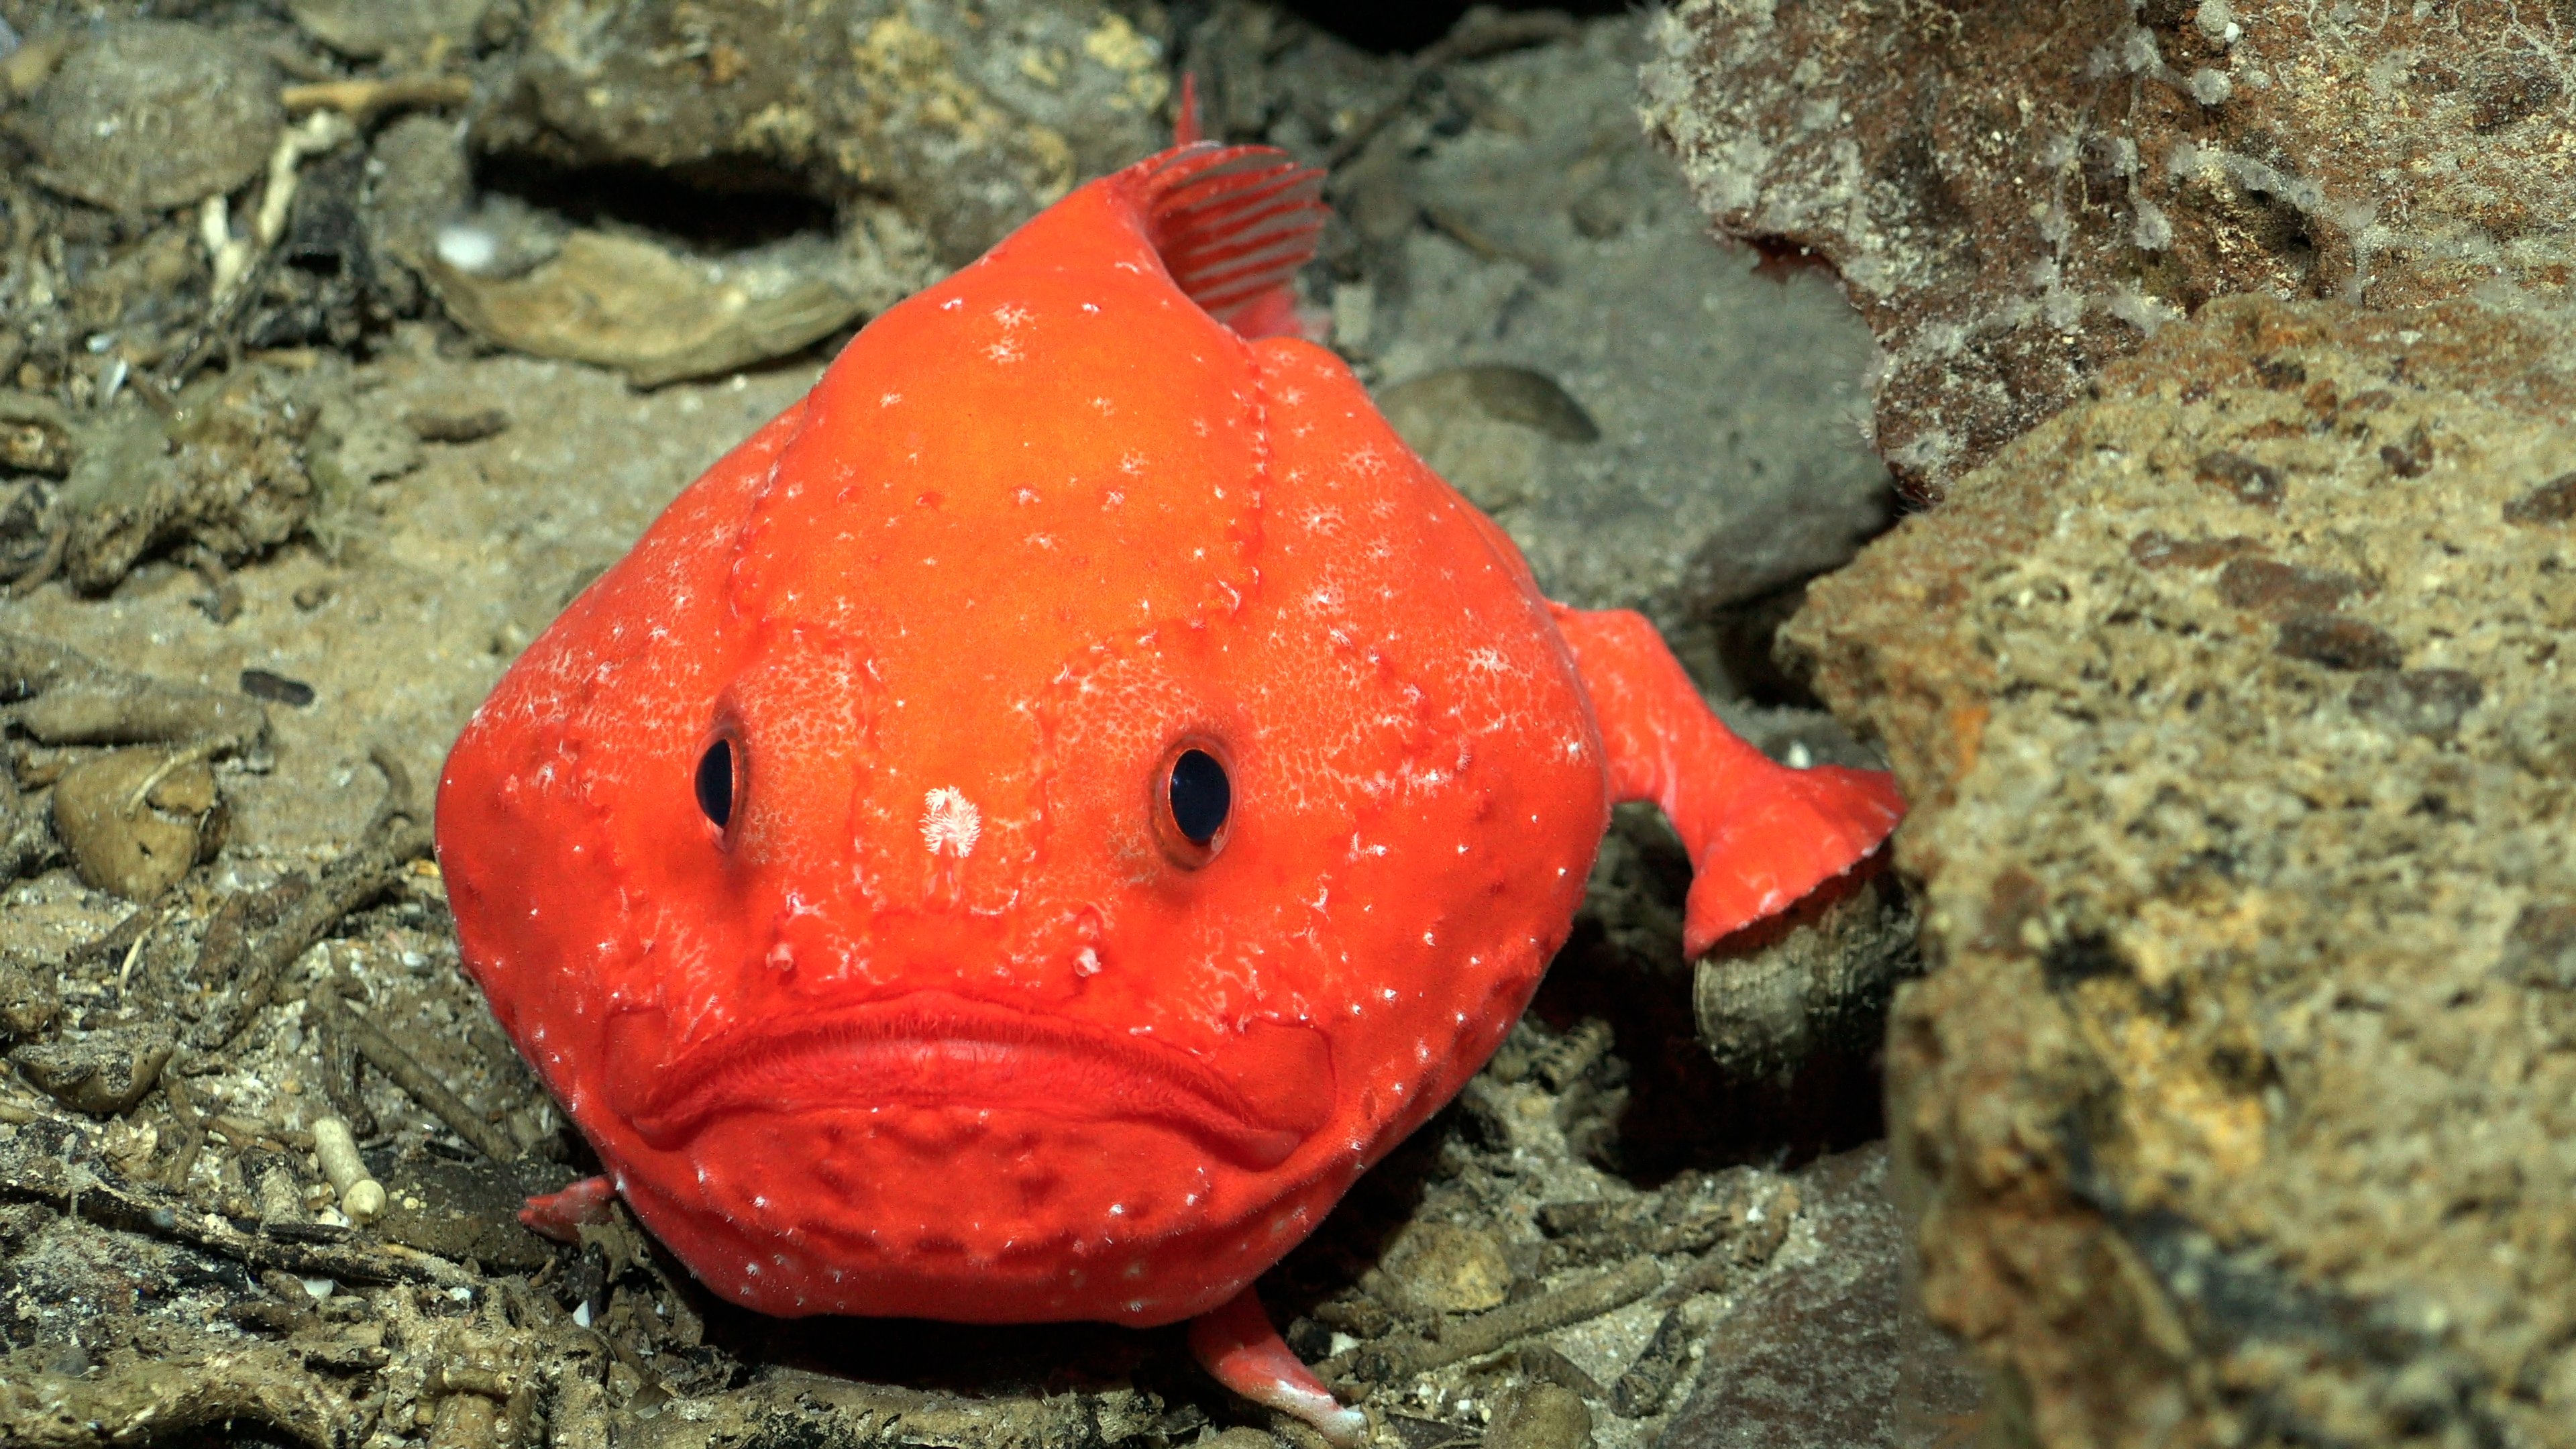 descubren más de 50 nuevas especies submarinas en costas de chile